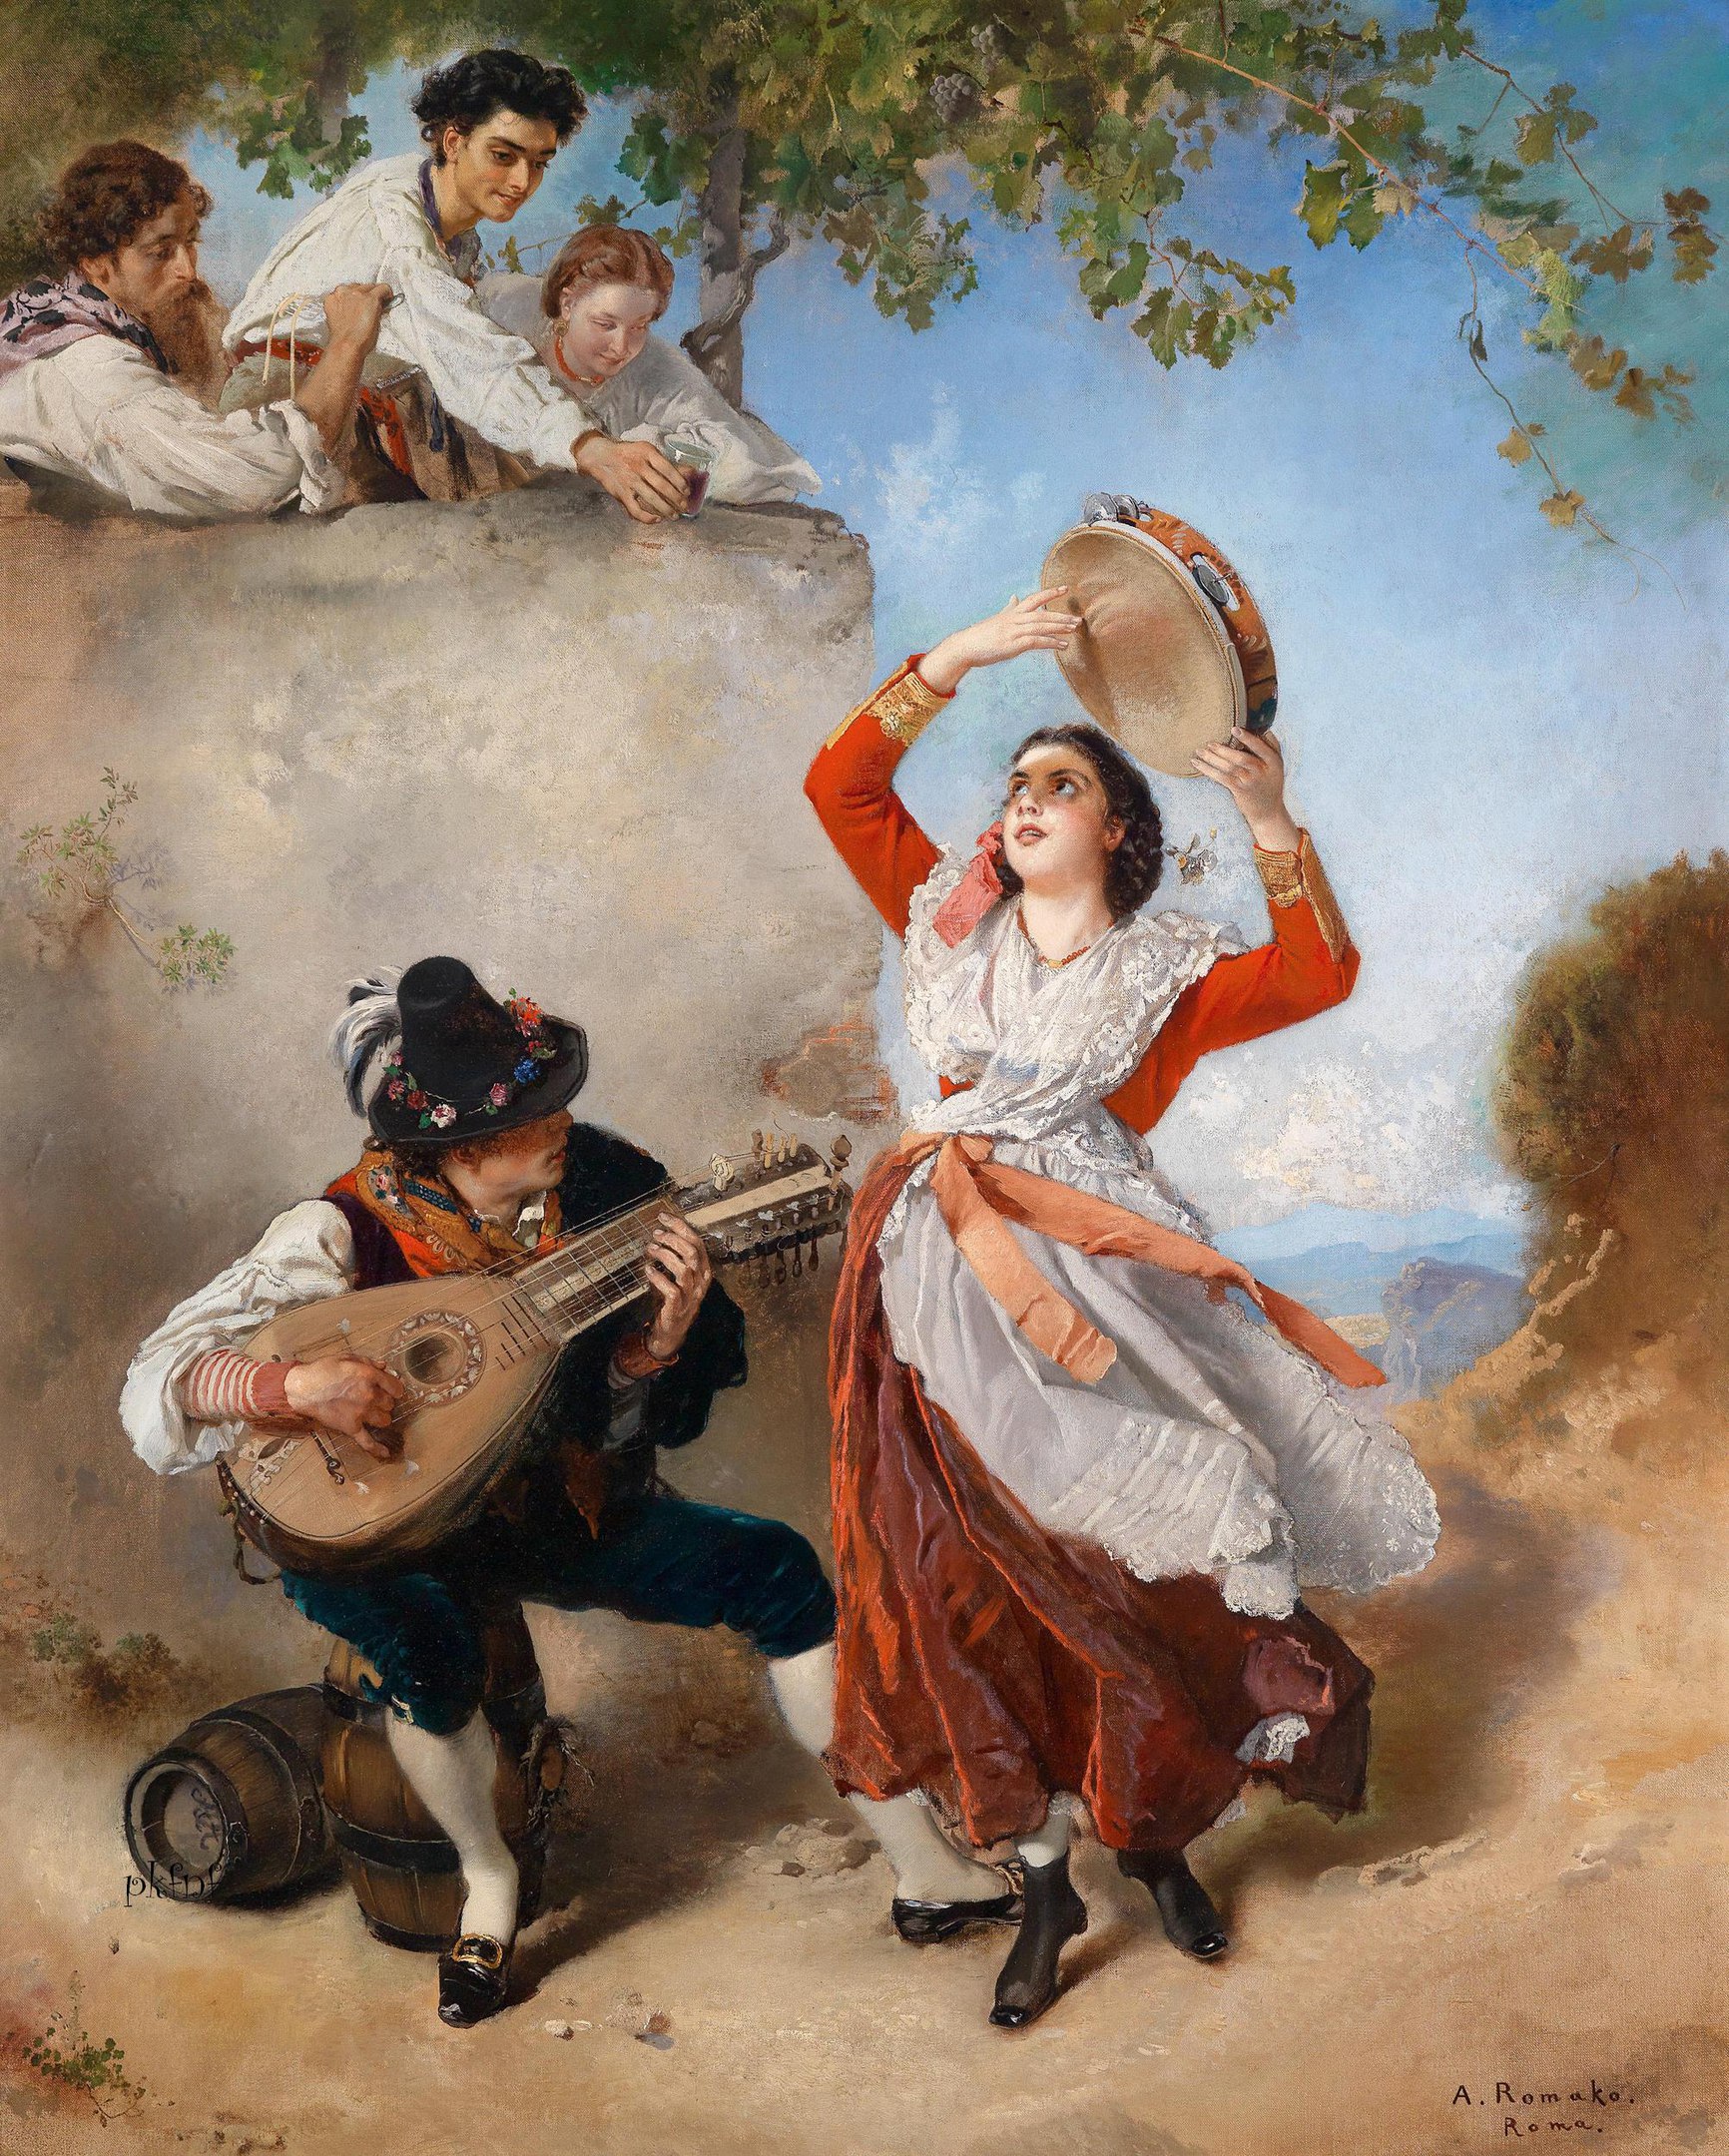 Цветы плоды музыкальные инструменты в итальянской живописи. Картина "Тарантелла" - итальянский художник.